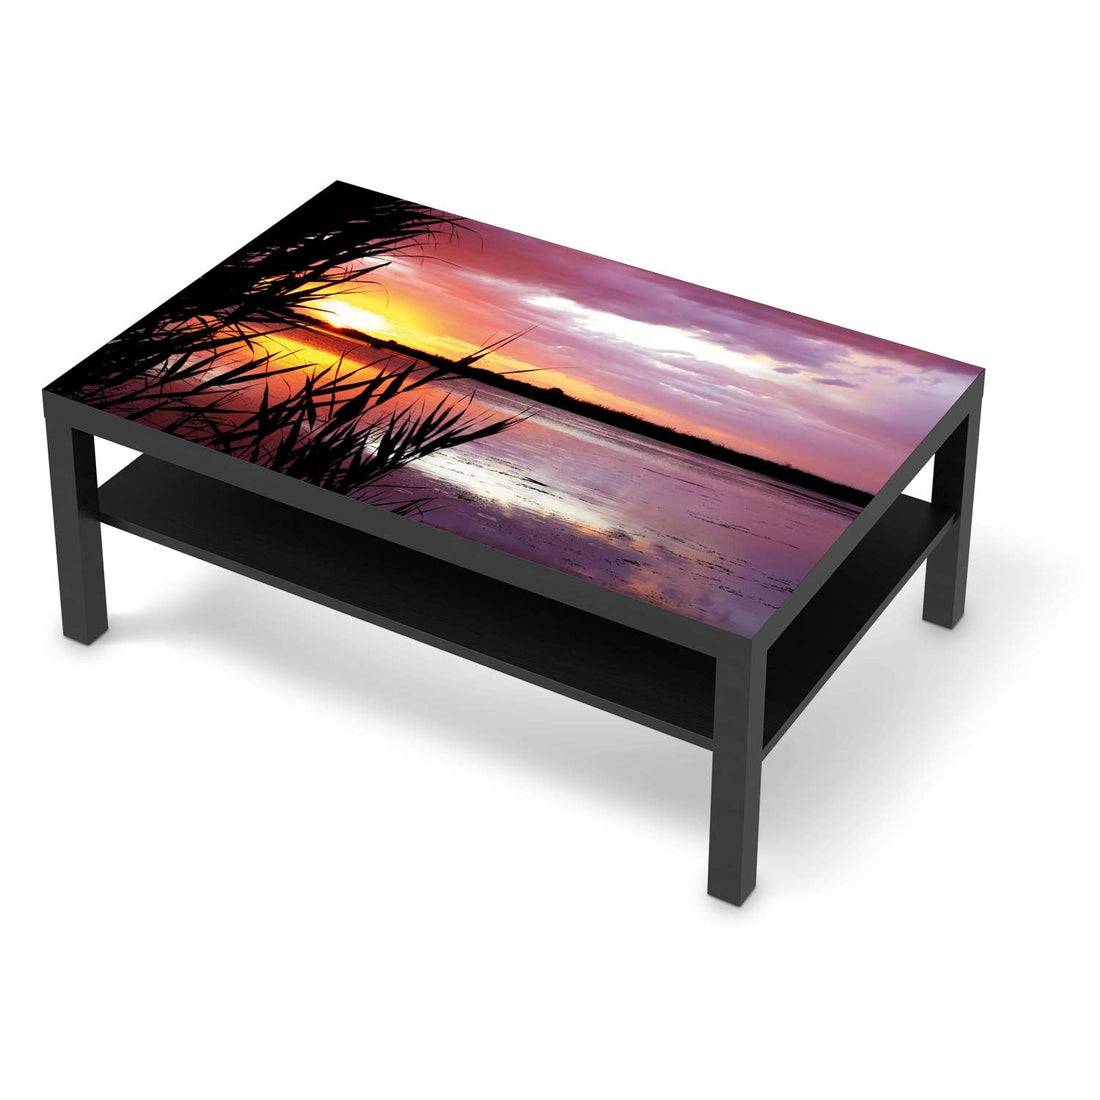 Klebefolie Dream away - IKEA Lack Tisch 118x78 cm - schwarz